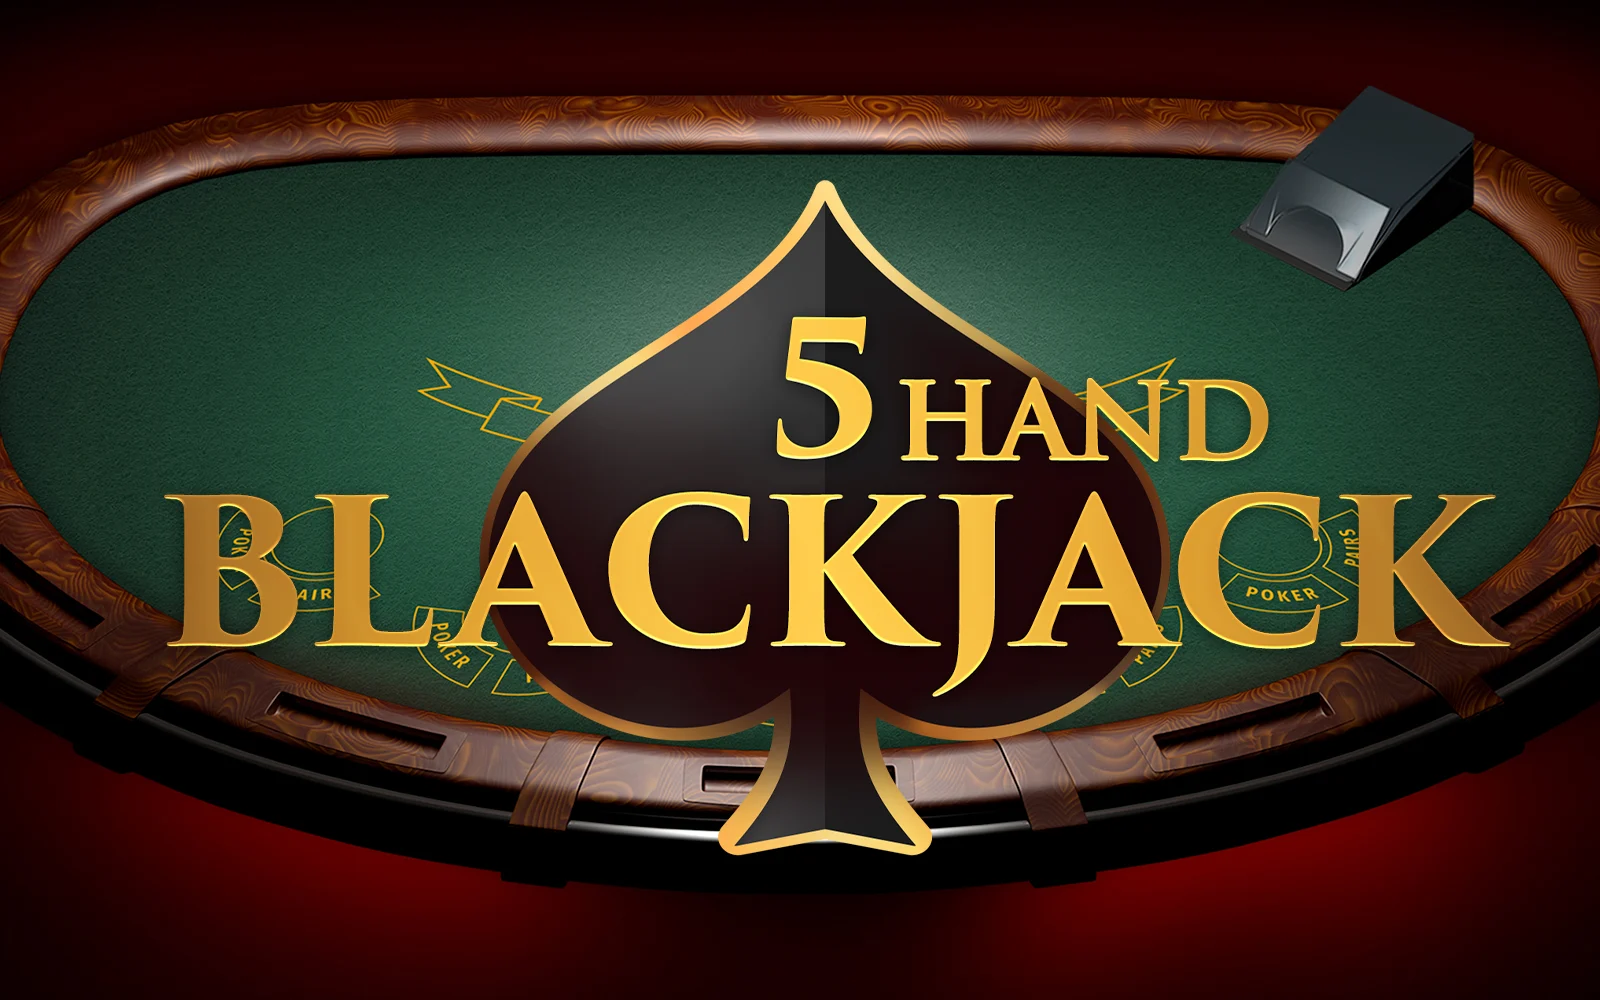 Play 5 Hand Blackjack on Starcasino.be online casino